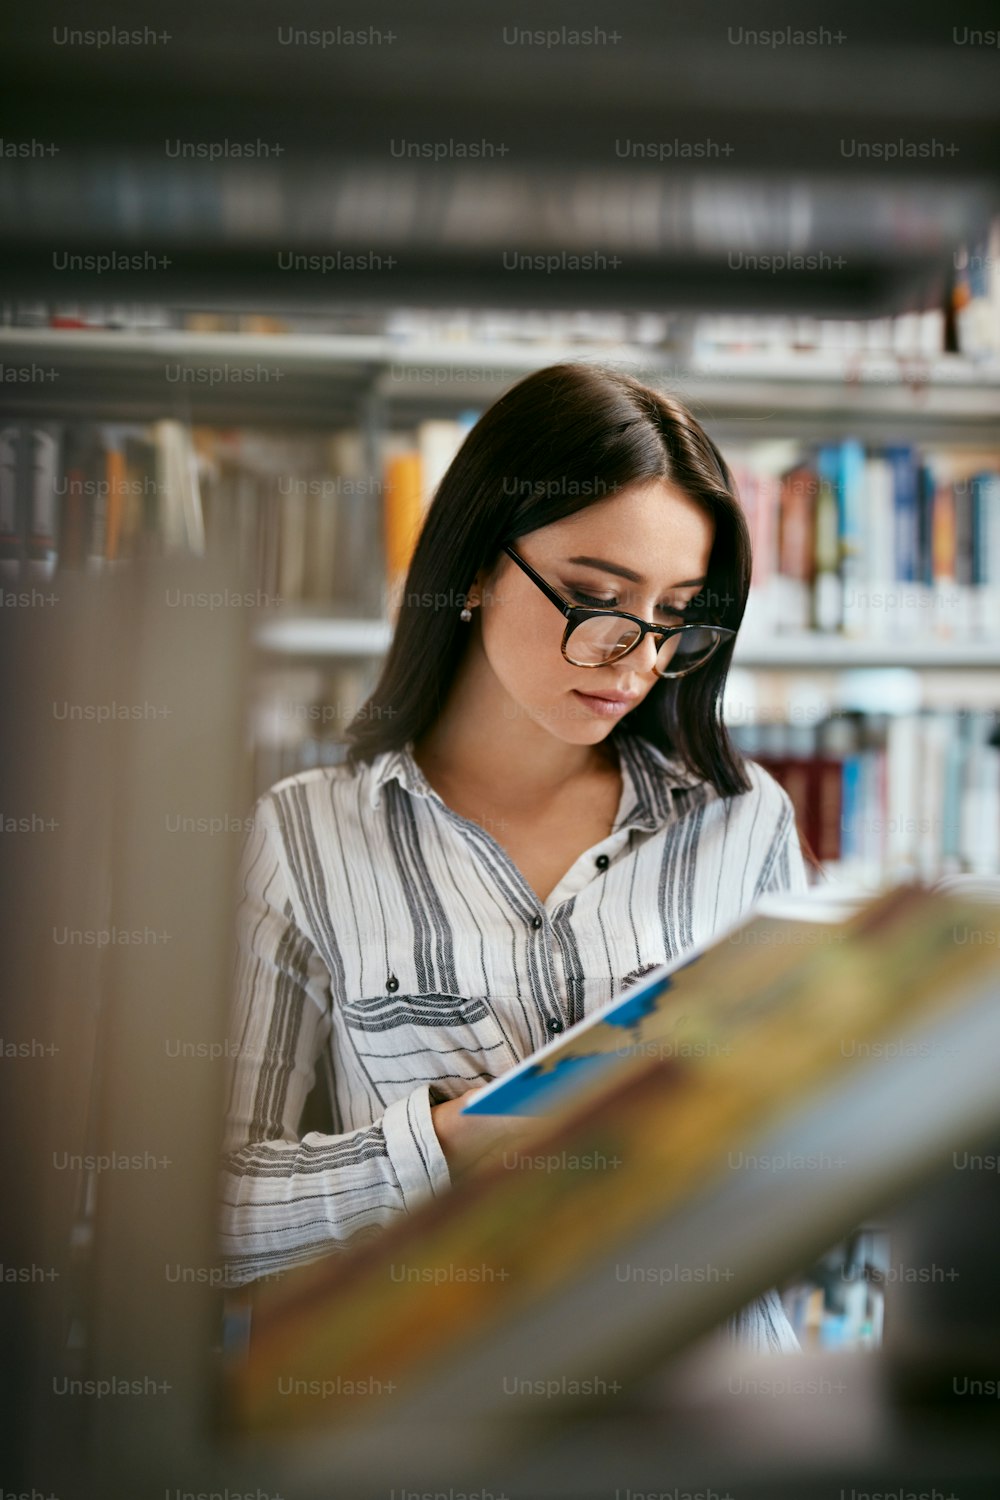 Mujer Estudiante Buscando Libros En La Librería O Biblioteca. Mujer Buscando Libro De Texto En Las Estanterías. Alta resolución